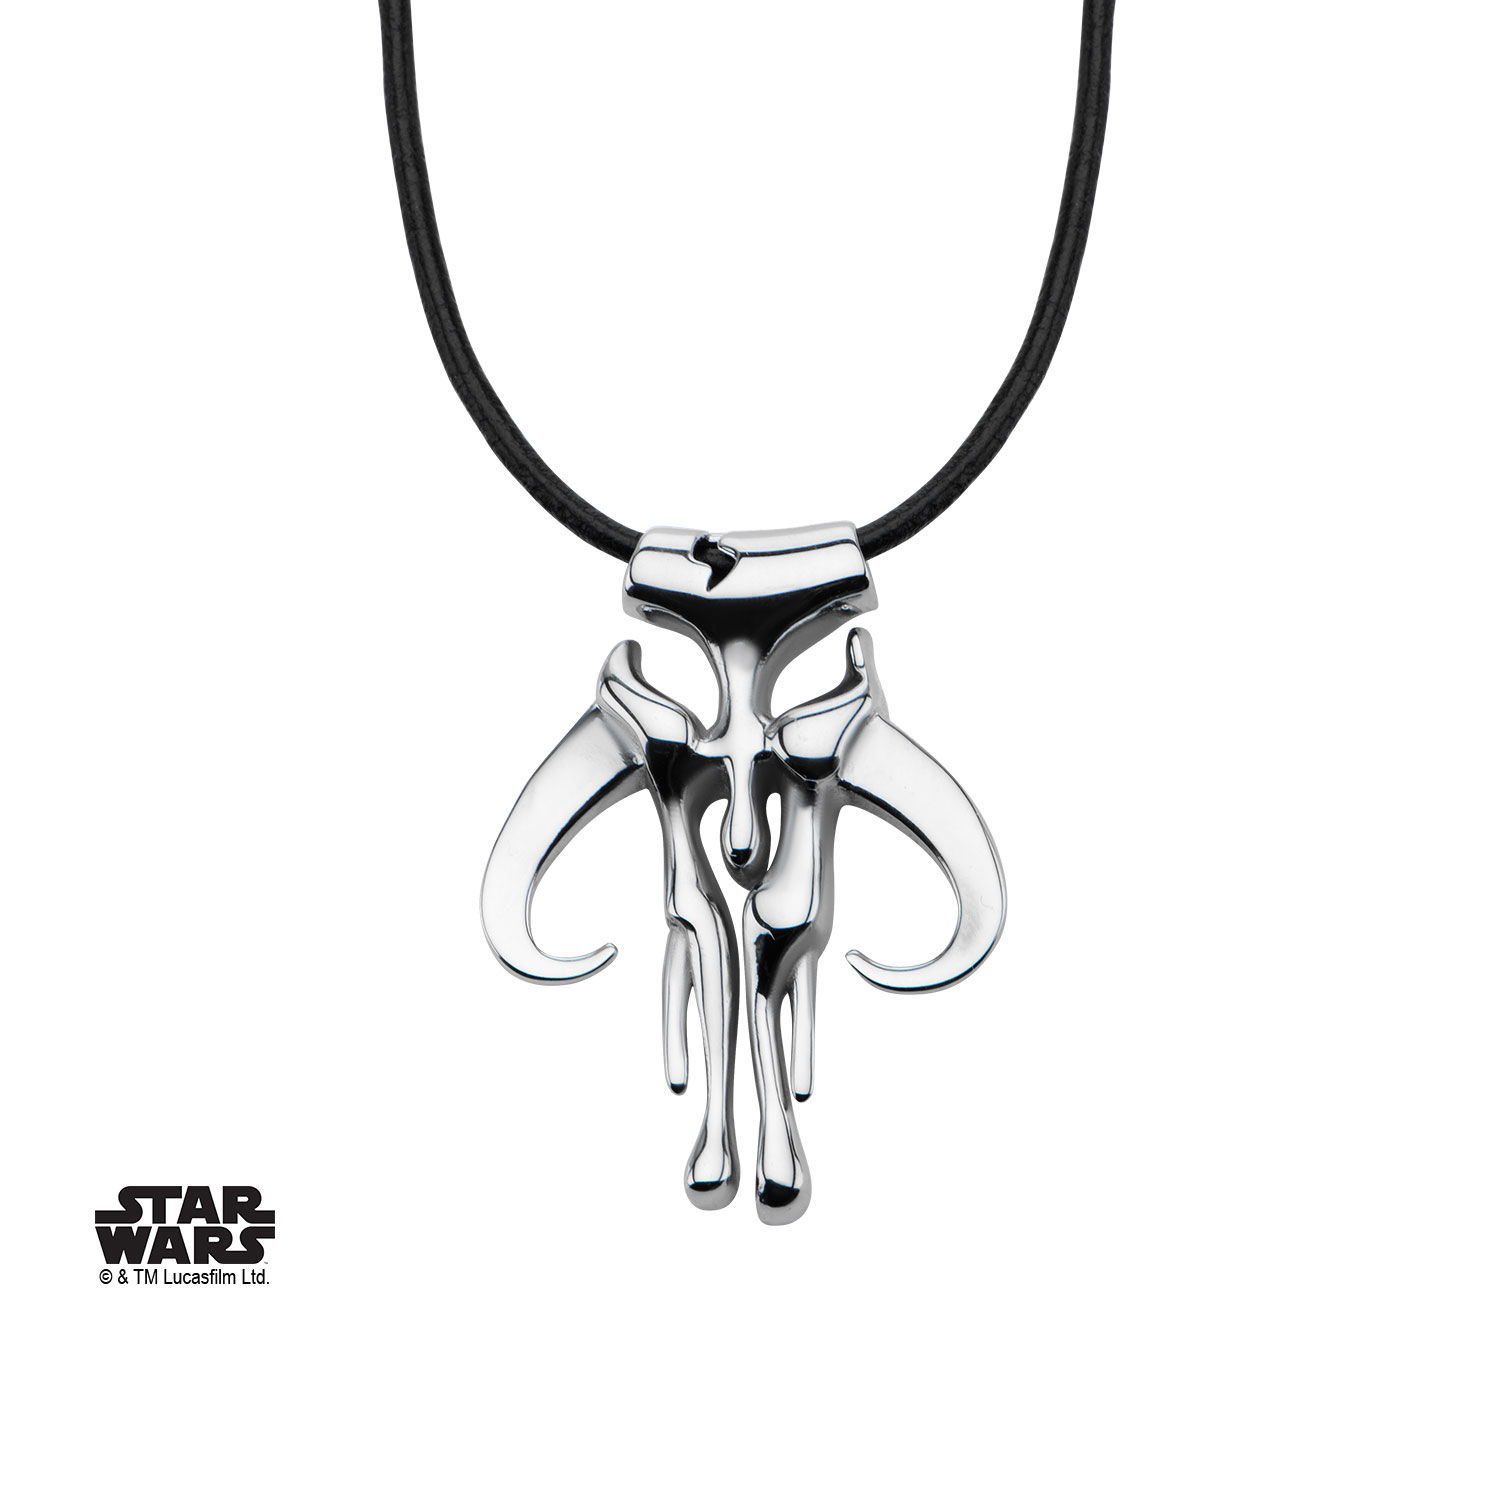 Star Wars pendentif Boba Fett officiel